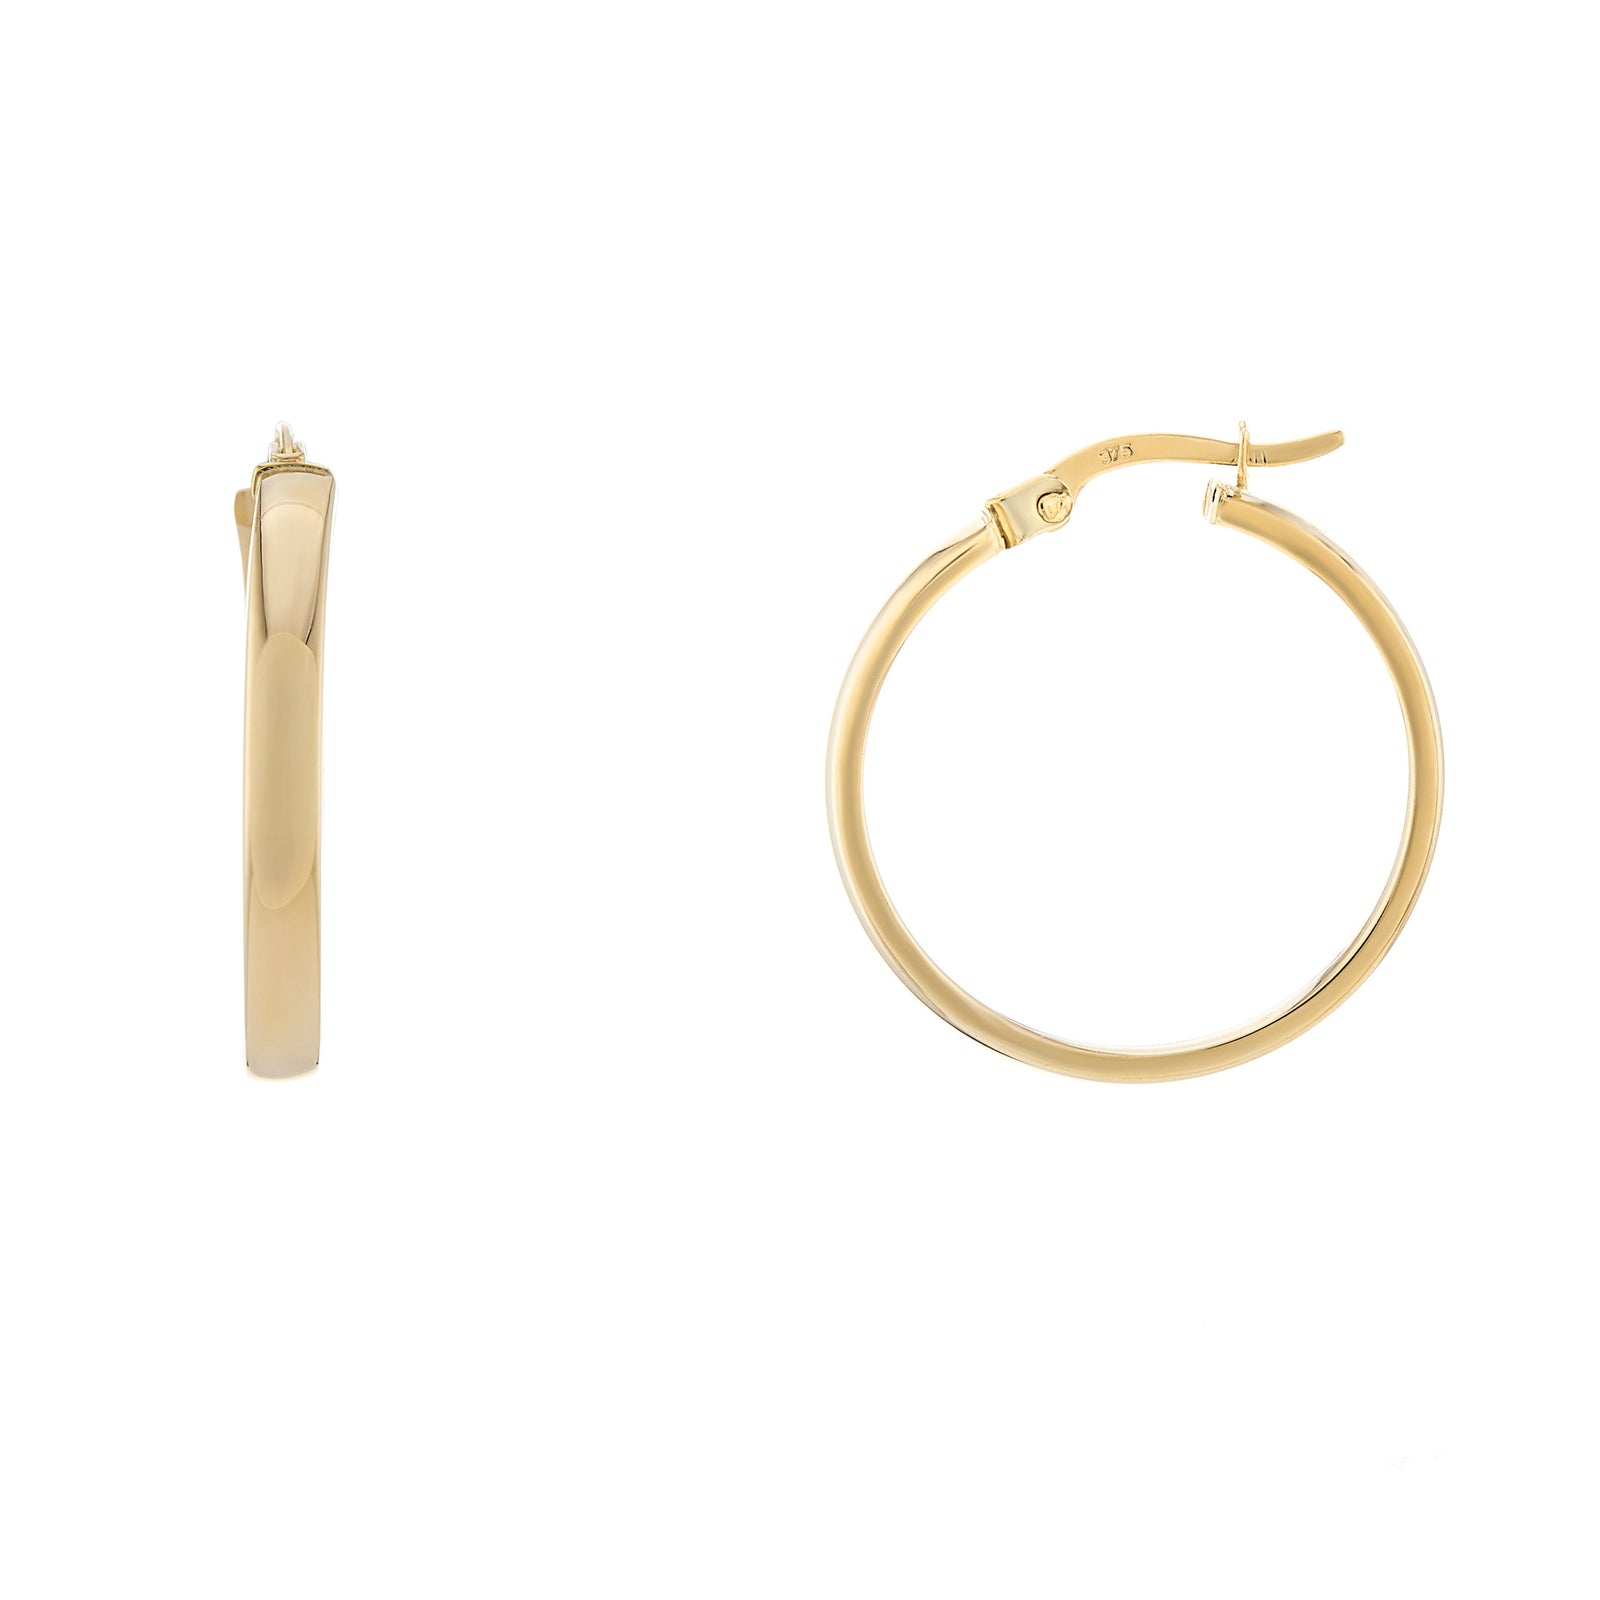 9ct gold 20mm plain hoop earrings